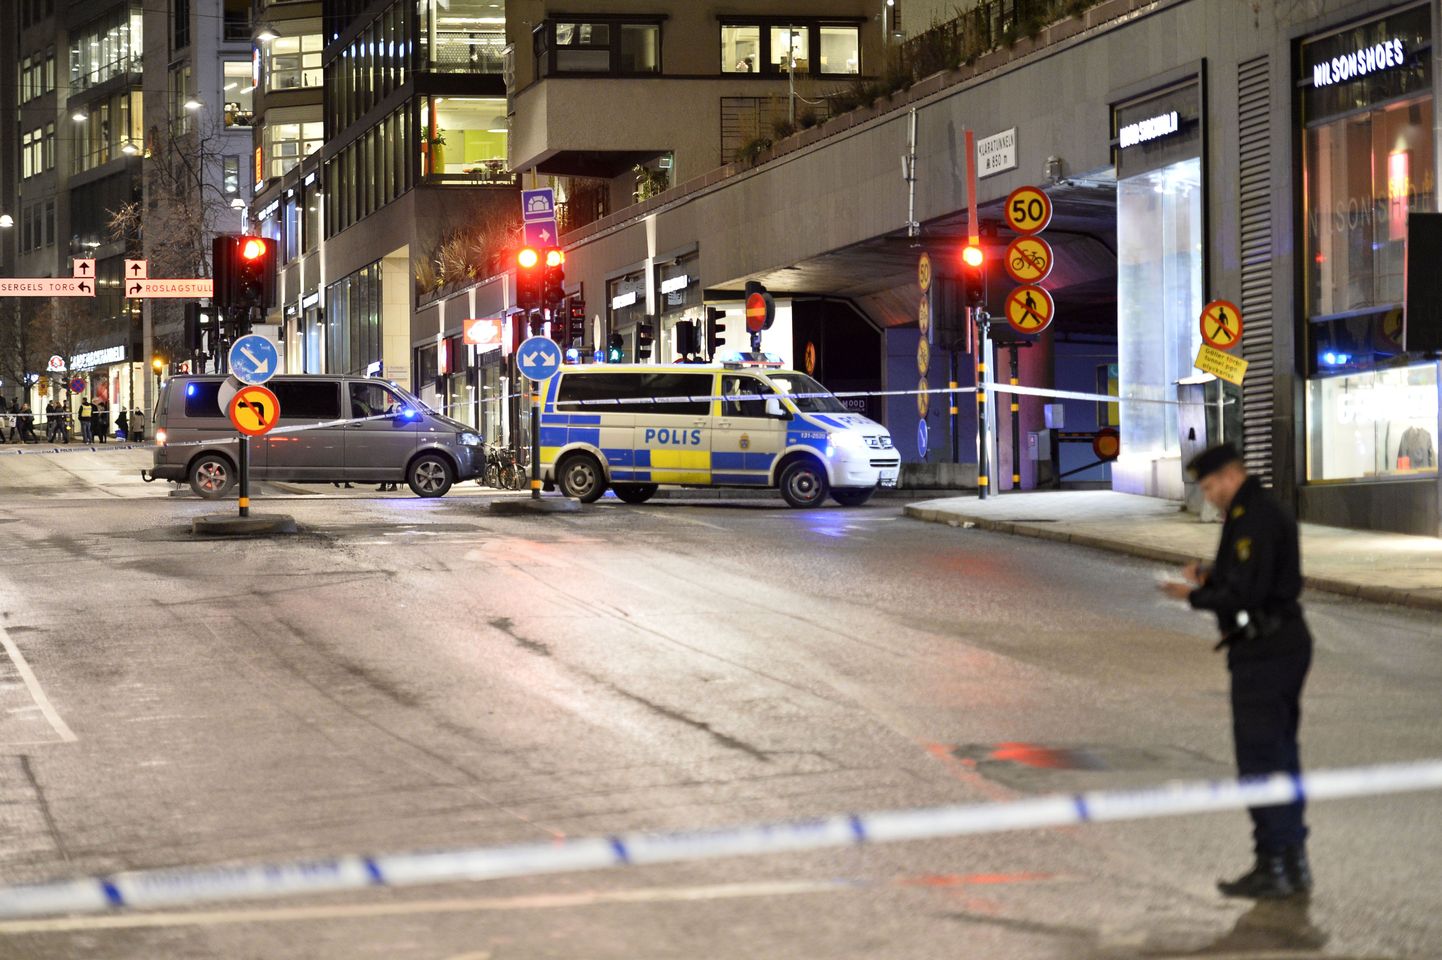 Stockholmi kesklinna läheduses toimus plahvatus.